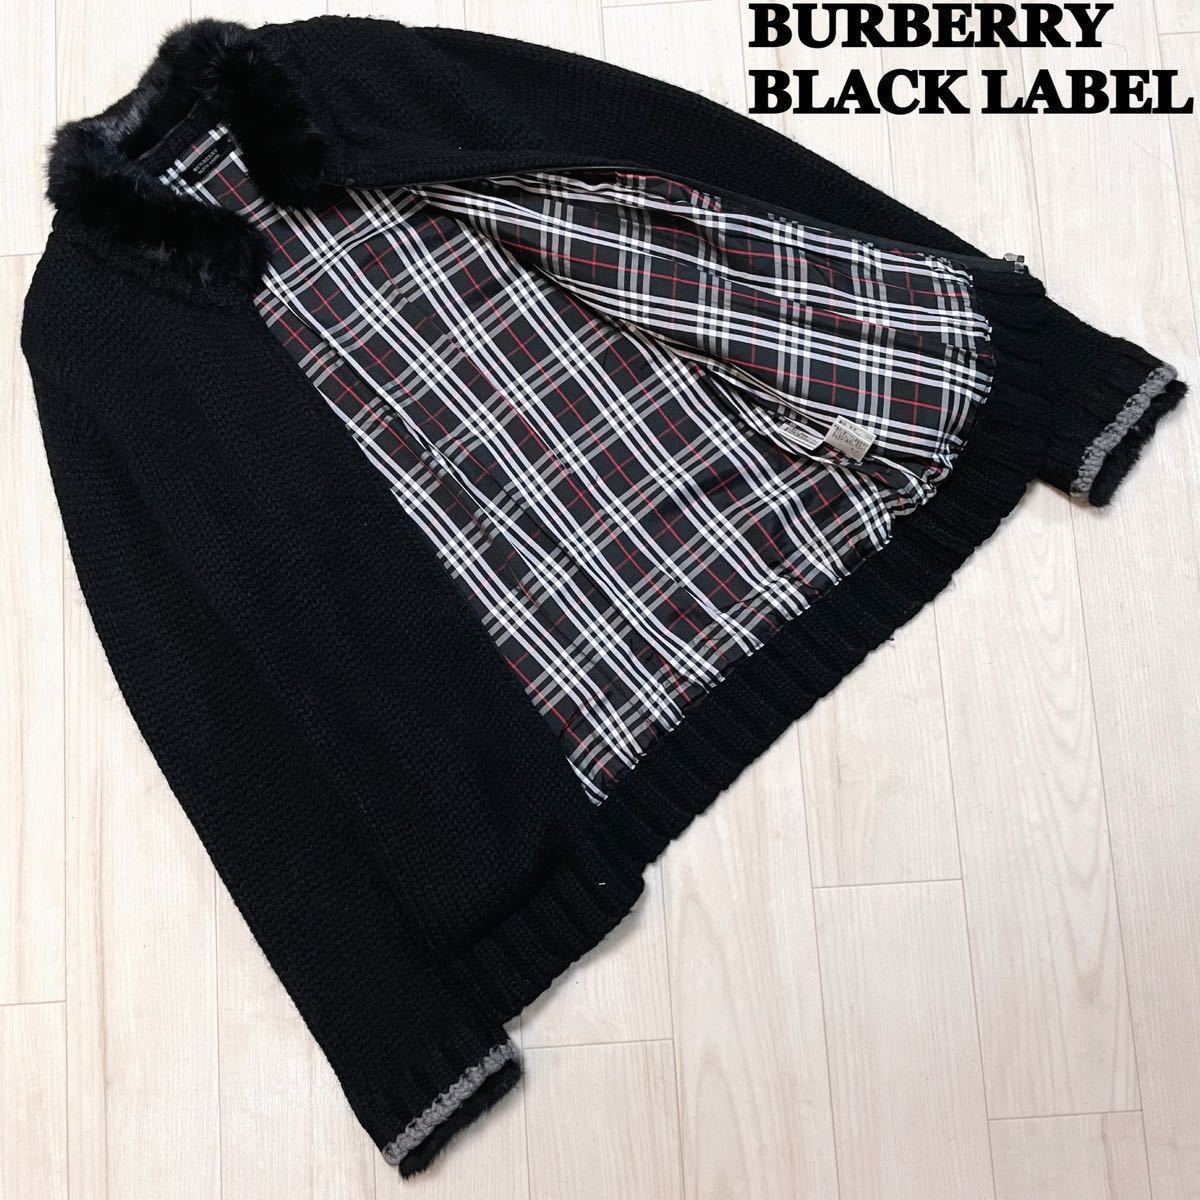 BURBERRY BLACK LABEL バーバリーブラックレーベル ノバチェック ホース刺繍 ラビットファー ニットジャケット サイズ3 ブラック 羊毛 人気